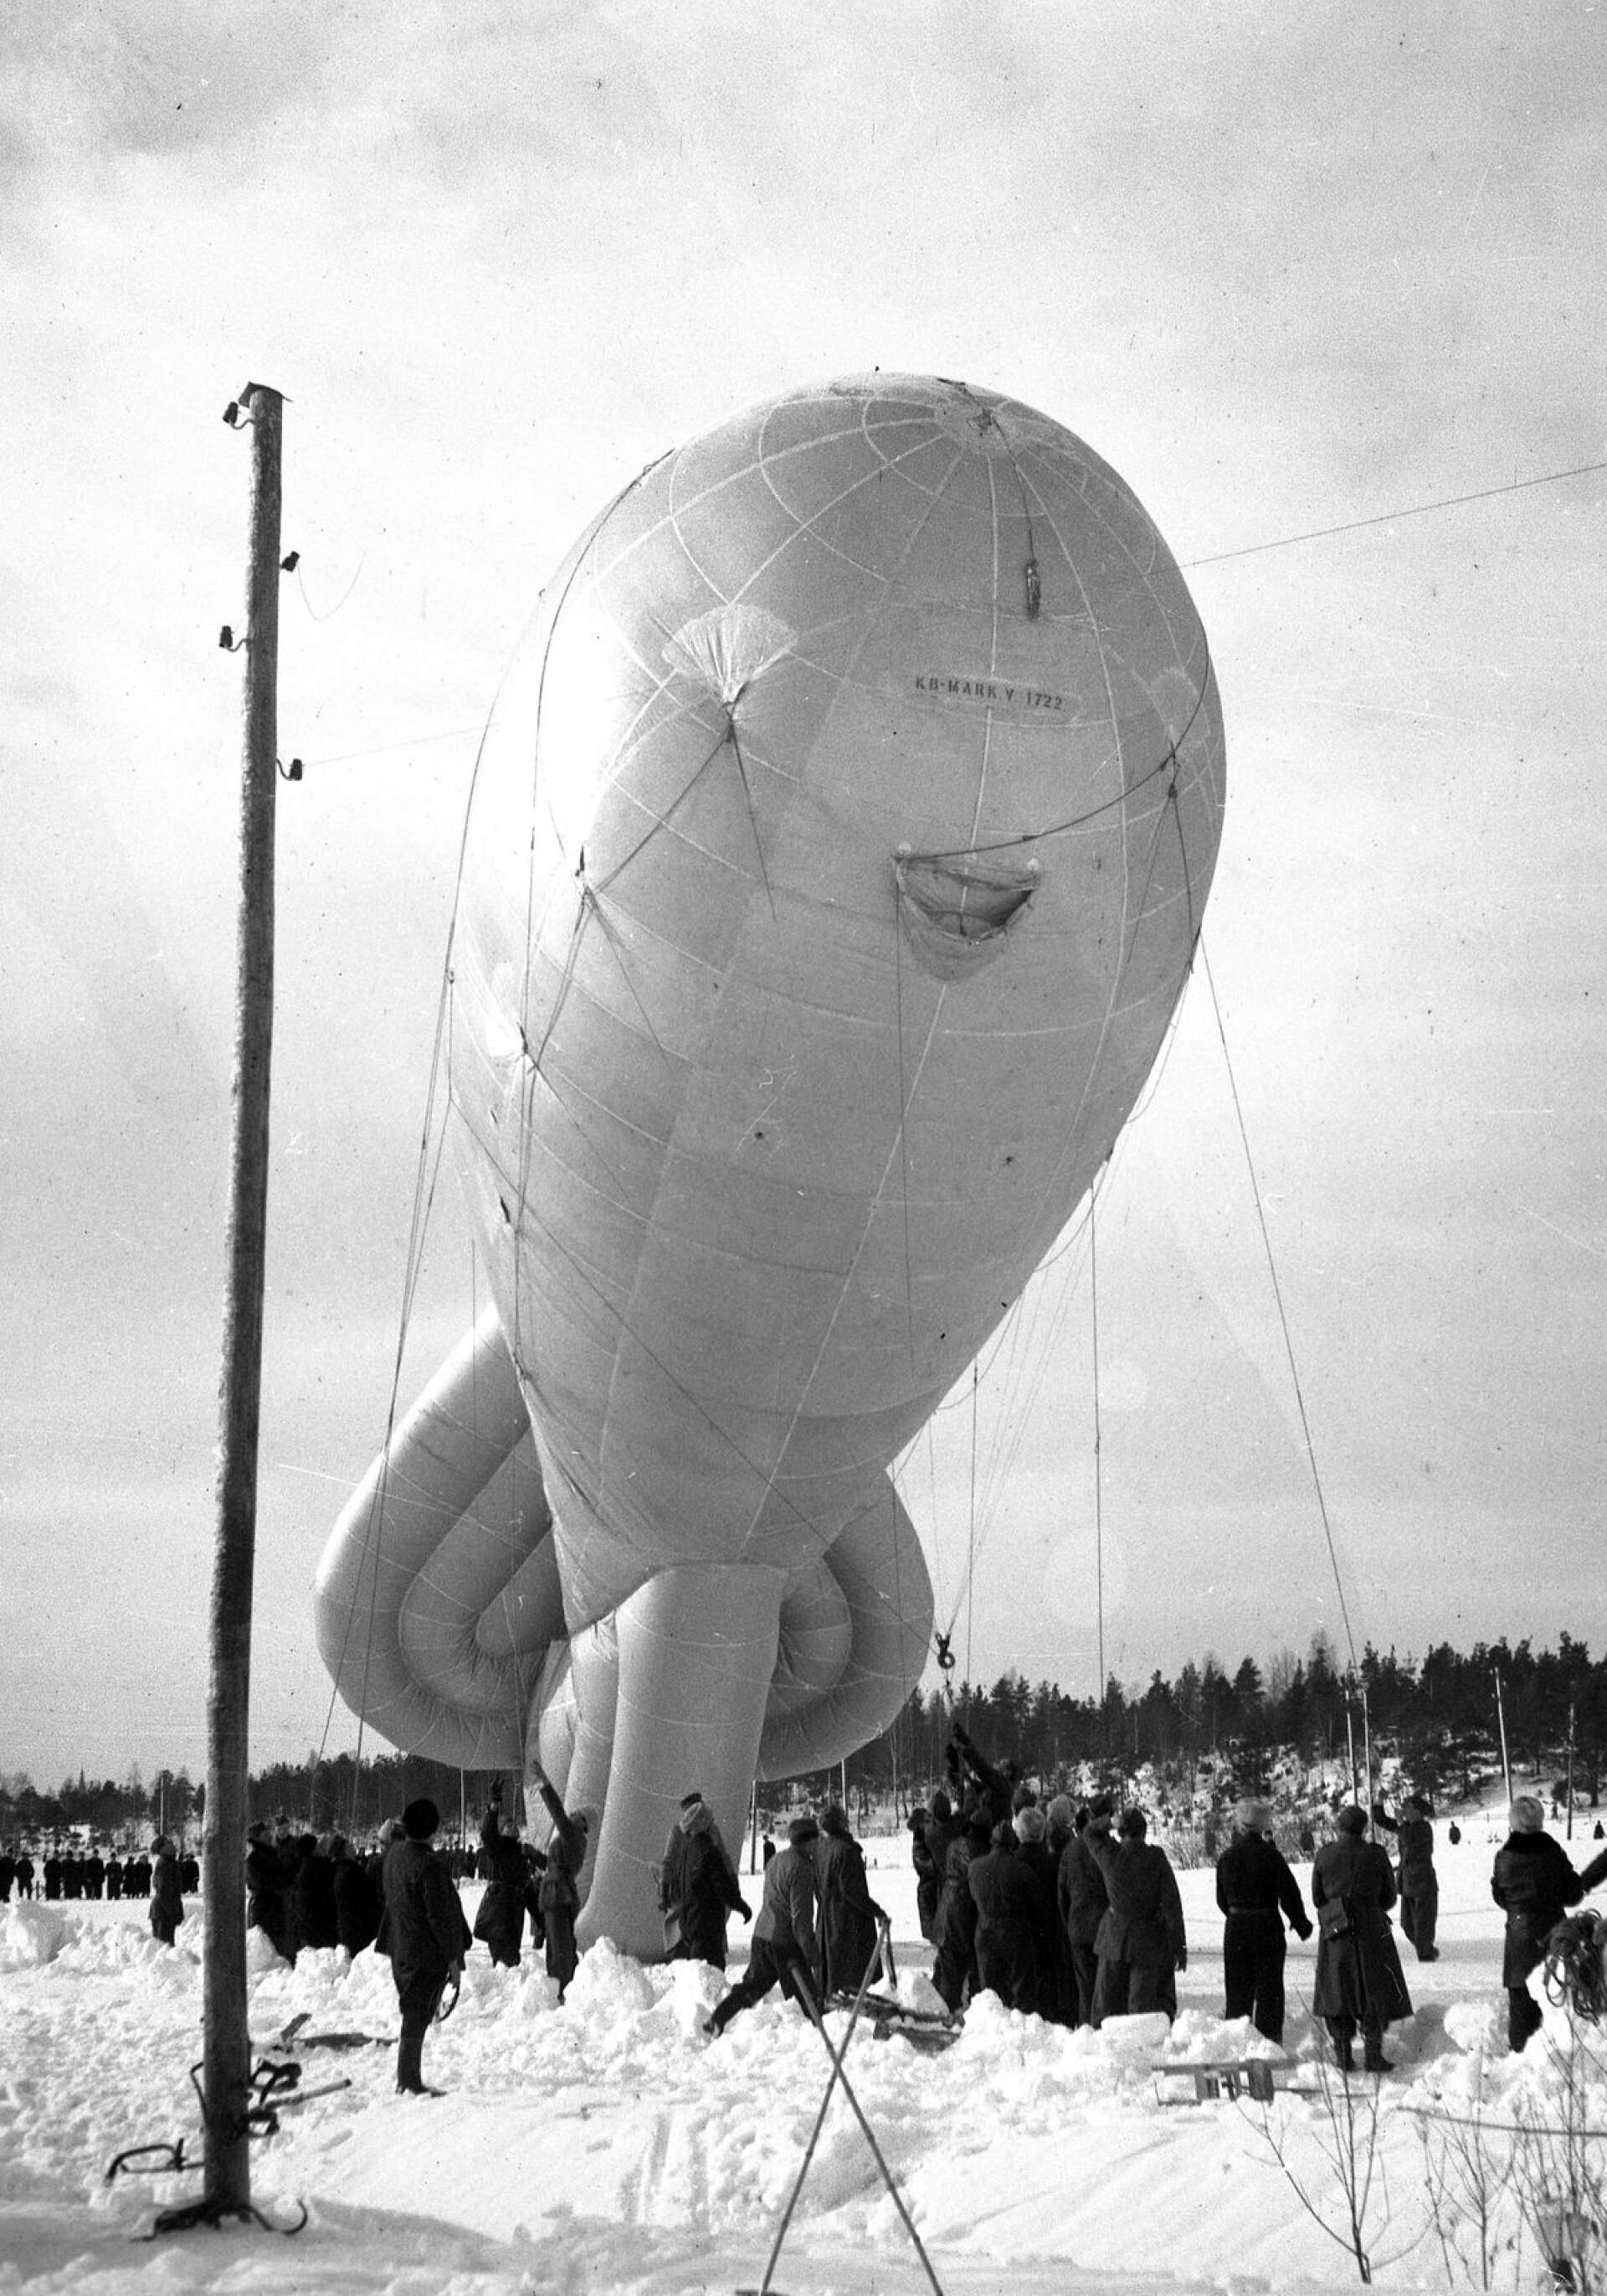 Spärrballonger användes som luftskydd mot lågt flygande plan under kriget. Tanken var att planen skulle trassla in sig i vajrarna under ballongen och därför tvingas upp på högre höjder. Bland annat fanns spärrballonger över Boforsindustrierna i Karlskoga under andra världskriget.